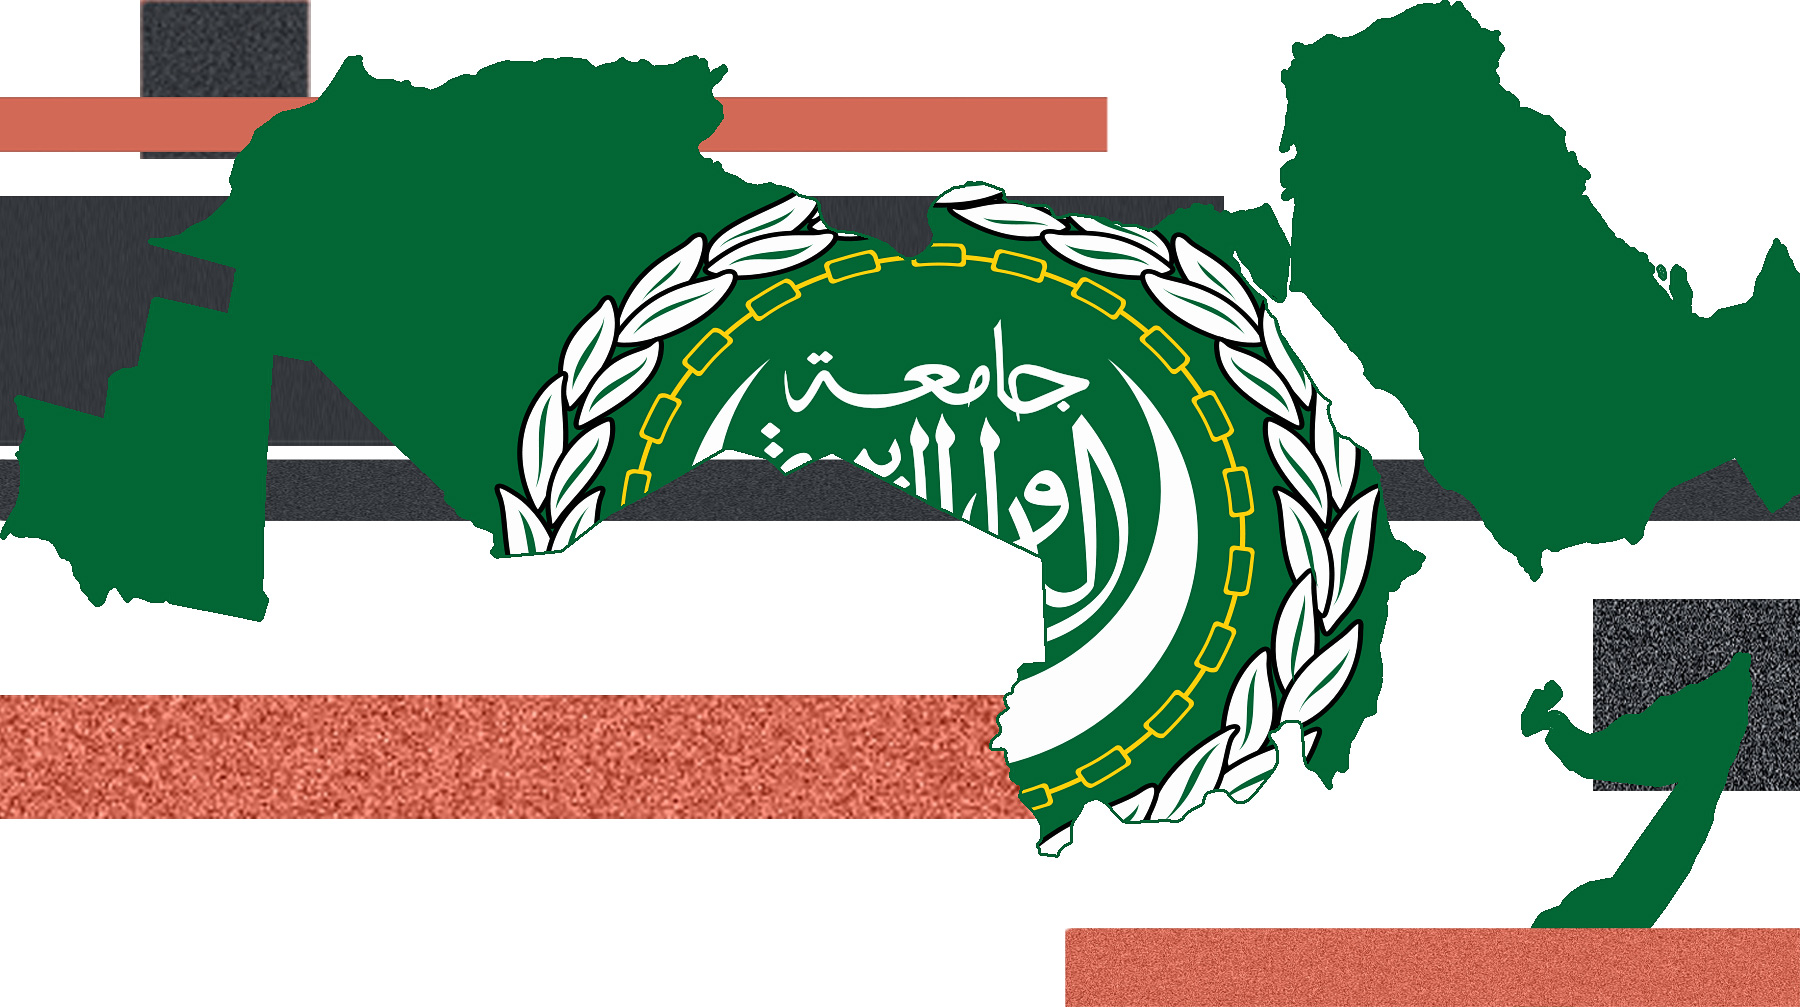 Участники организации также планируют запустить Арабскую зону свободной торговли Карта Лиги арабских государств